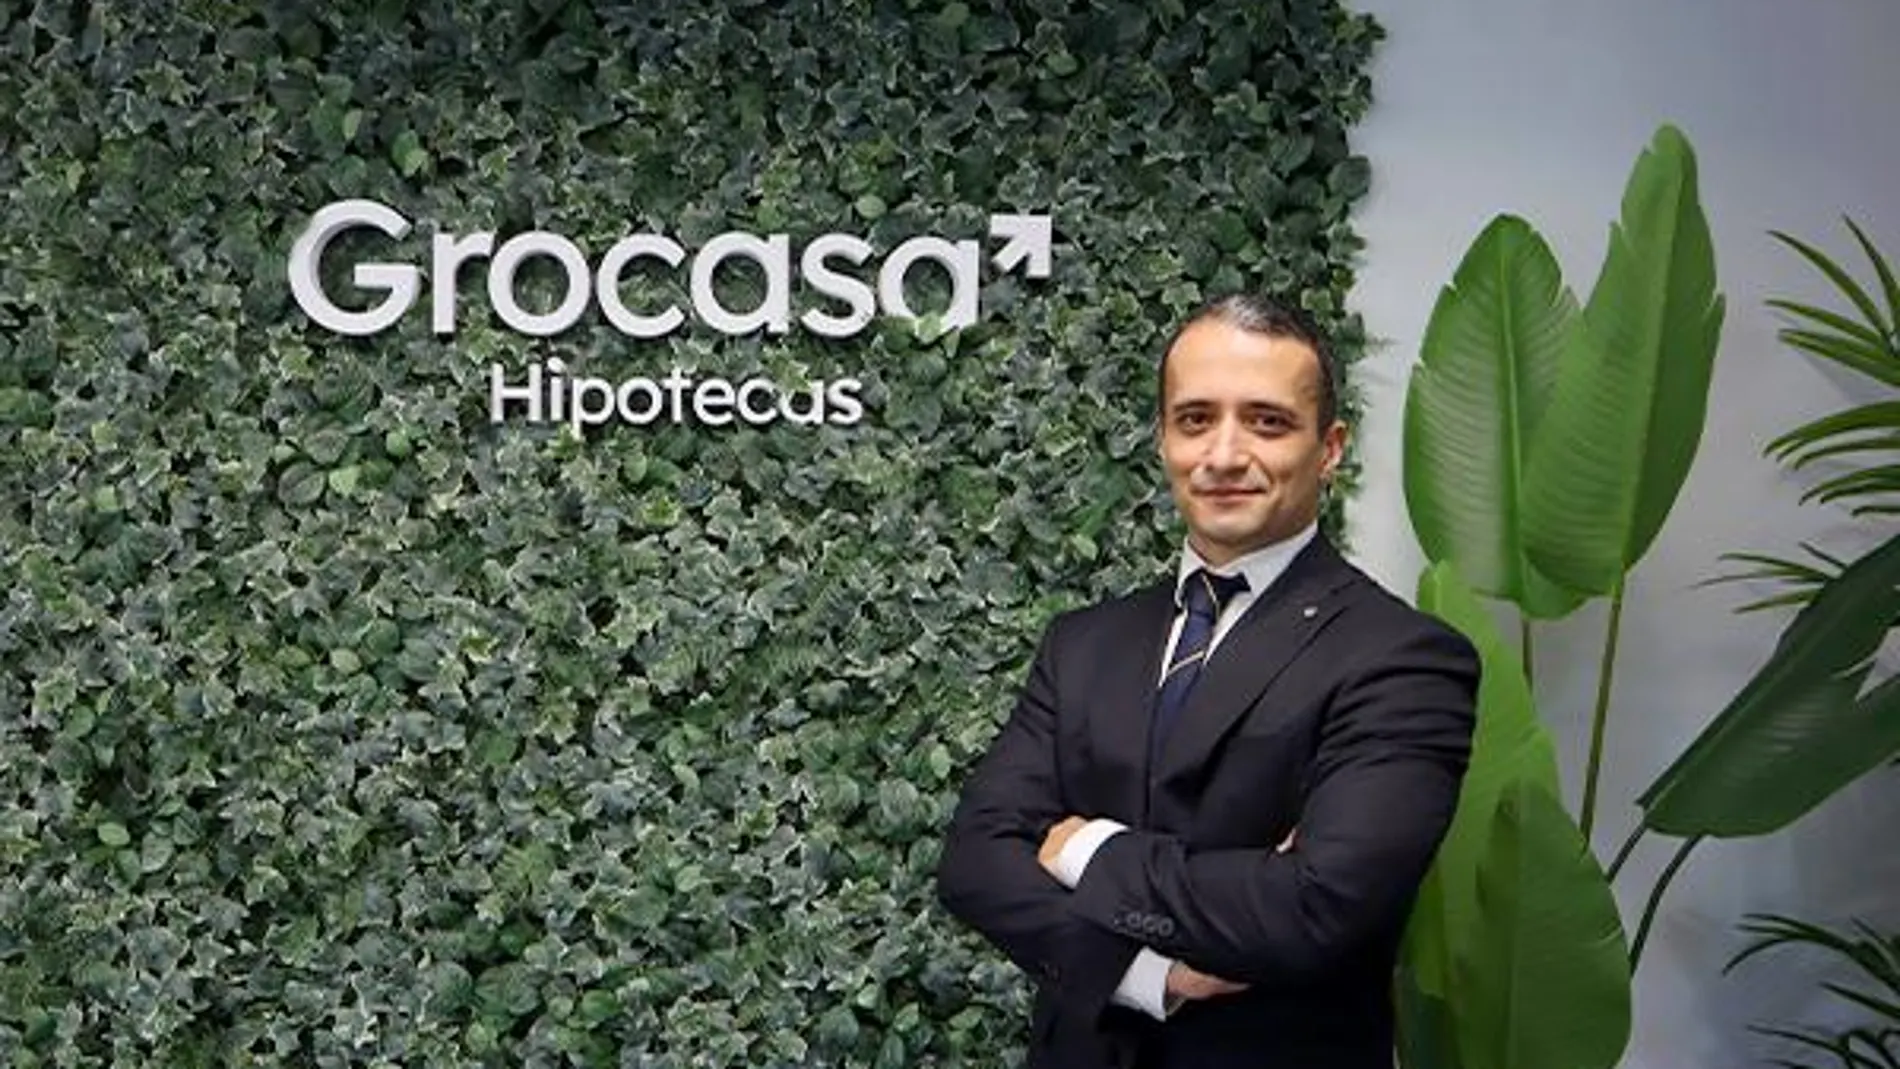 Benito Cerezo se graduó en Economía y Administración de Empresas en la Universitat Autónoma de Barcelona. Posteriormente ejerció de gestor comercial en BBVA, dando el salto al sector de la intermediación financiera en 2006. En julio de 2019 adquiere el rol de formador en Grocasa Hipotecas.